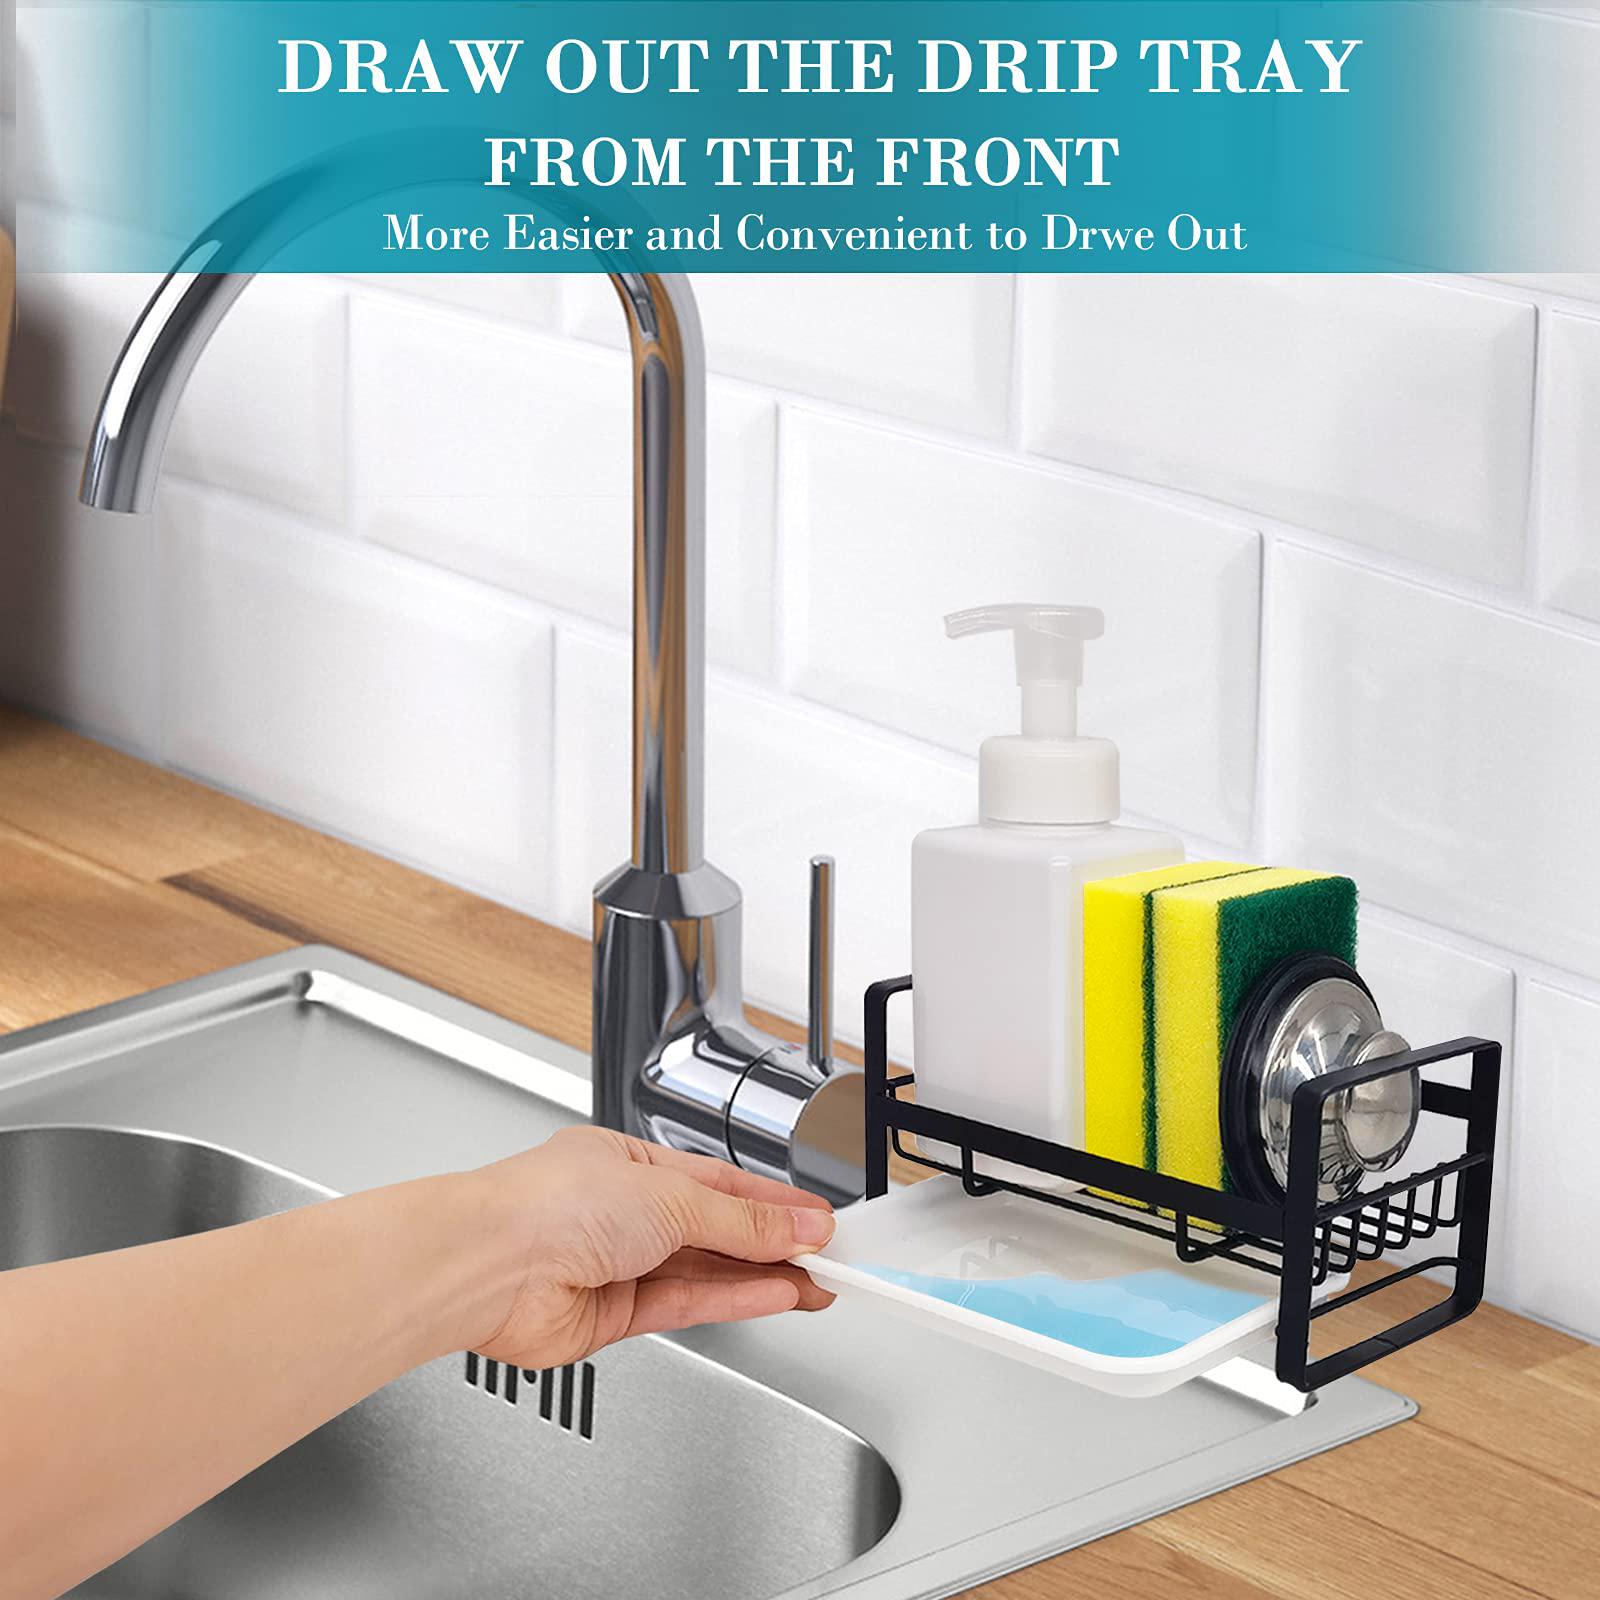 vanten kitchen sink caddy sponge holder sink organizer, sink tray drainer rack, soap dish dispenser brush holder storage acce